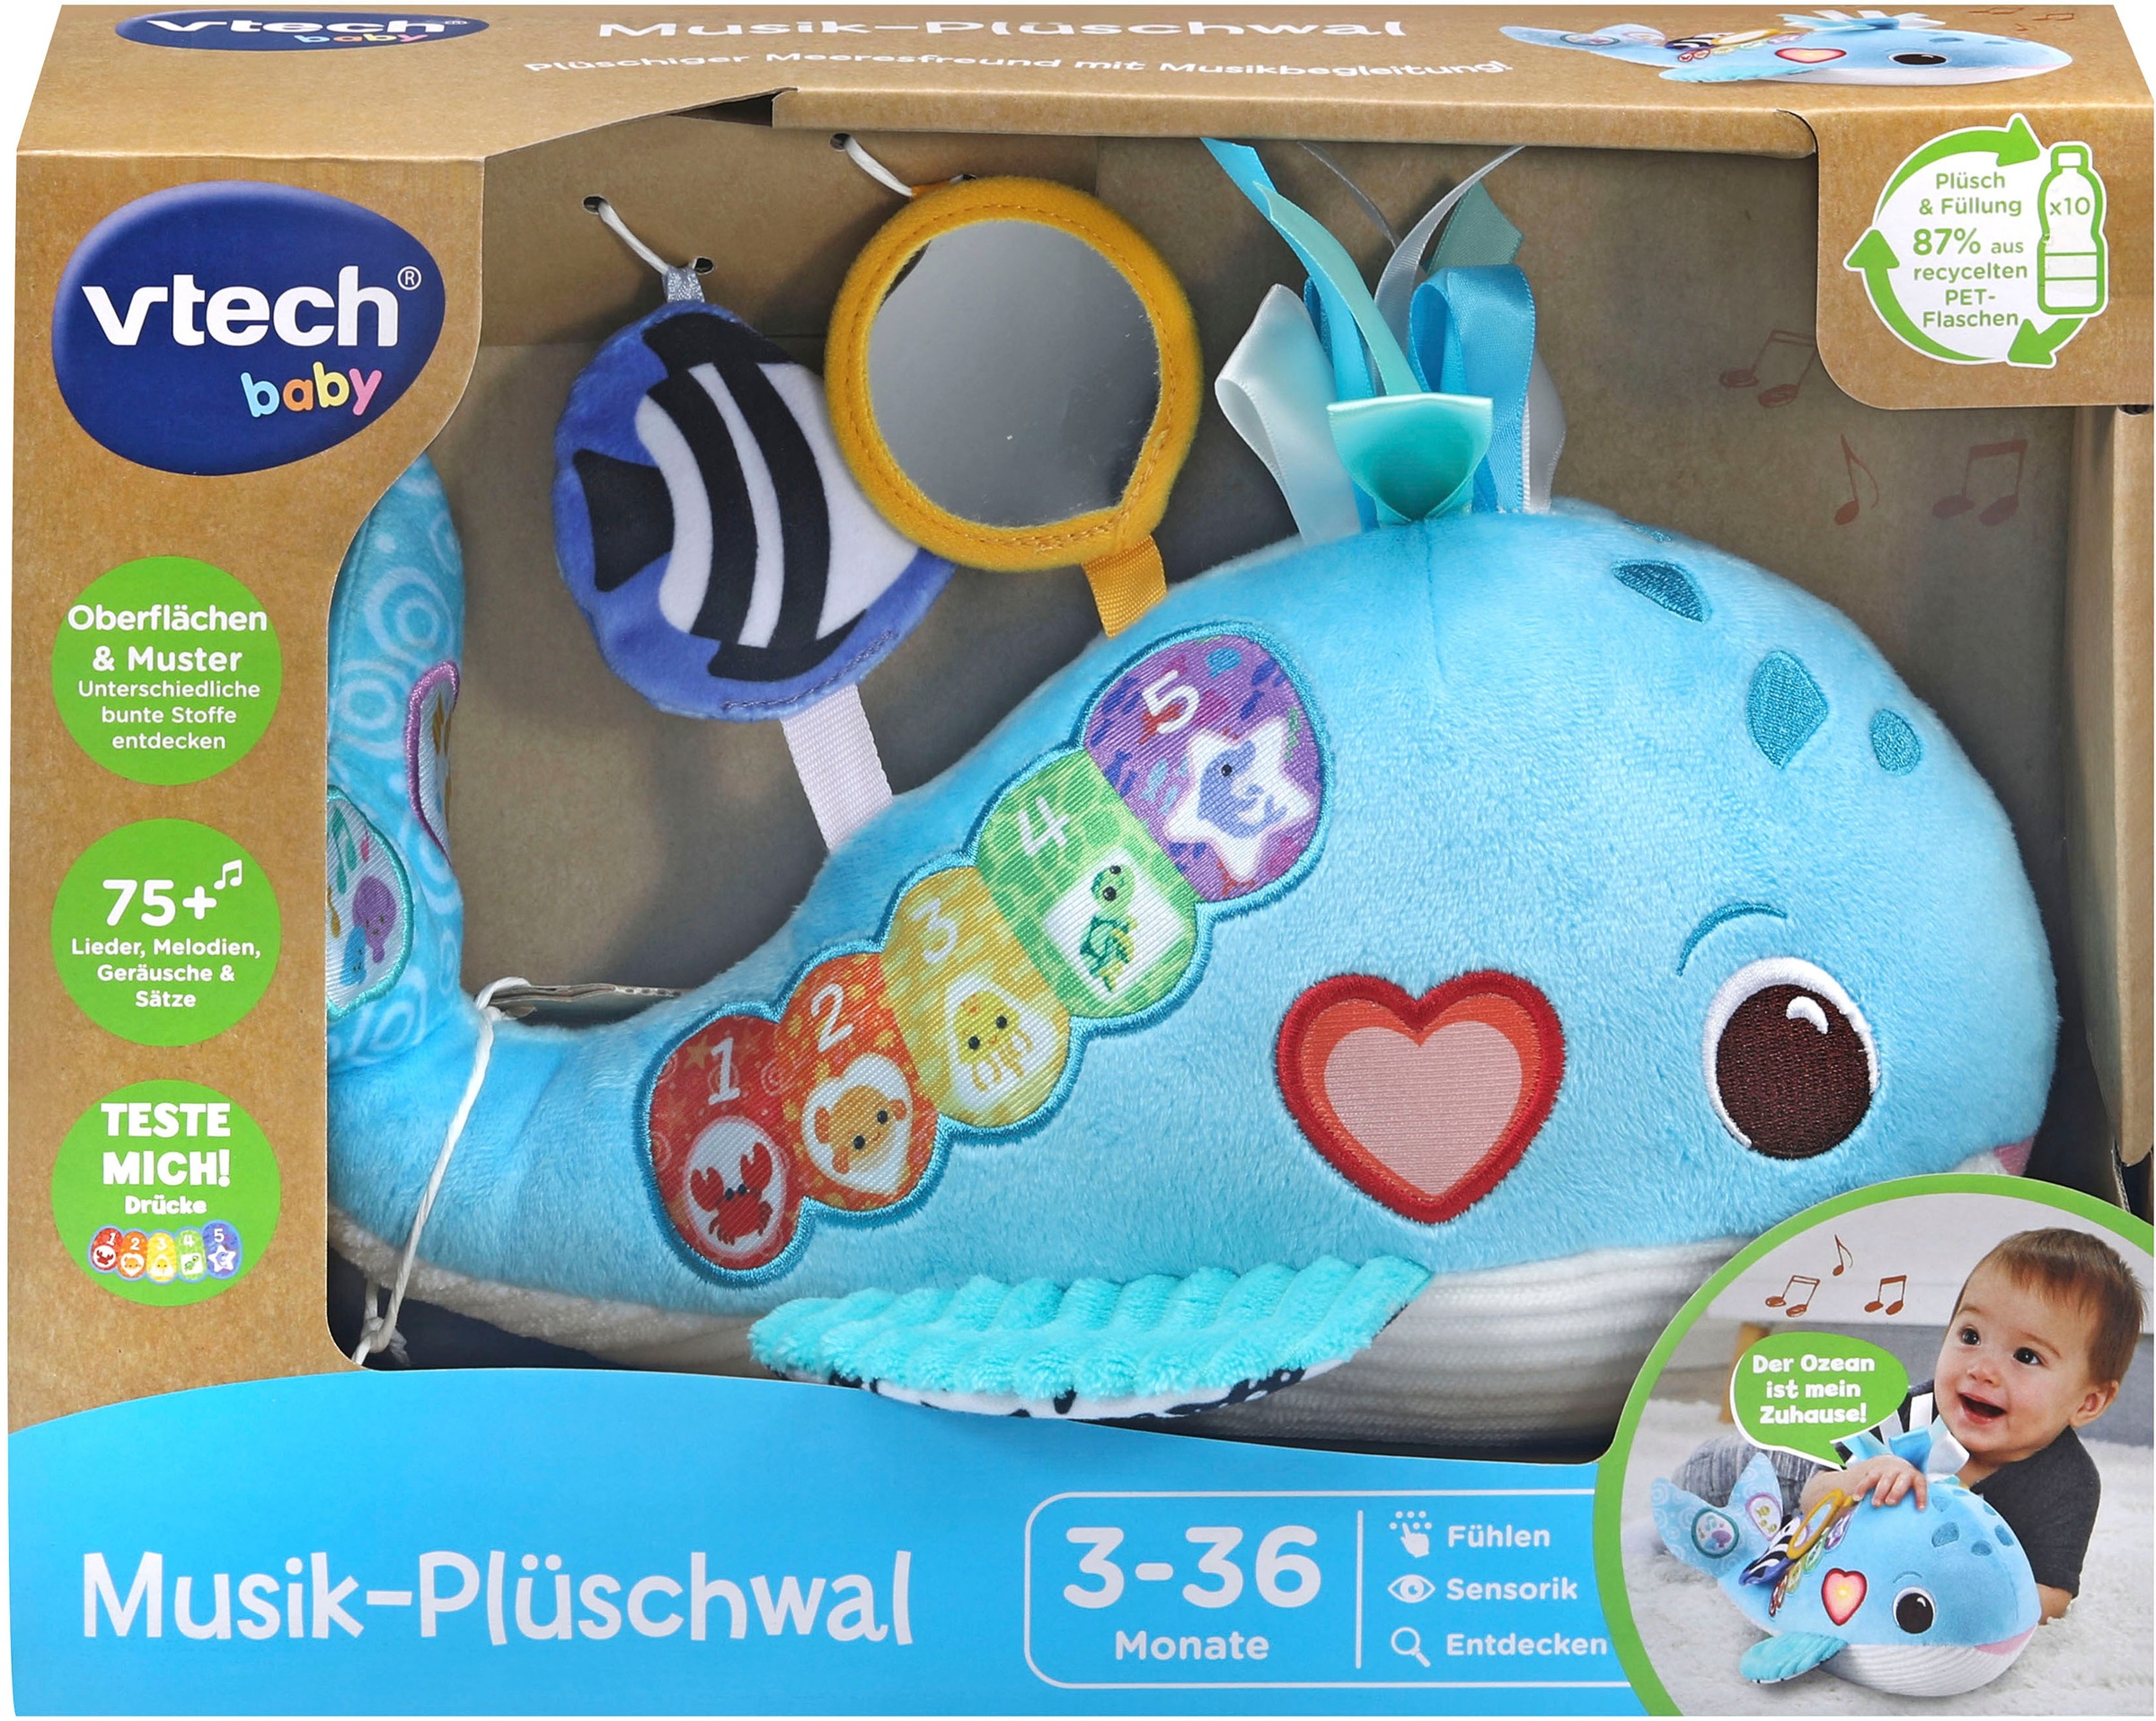 Vtech® Plüschfigur »Vtech Baby, Musik-Plüschwal«, aus recyceltem Material  im Online-Shop kaufen